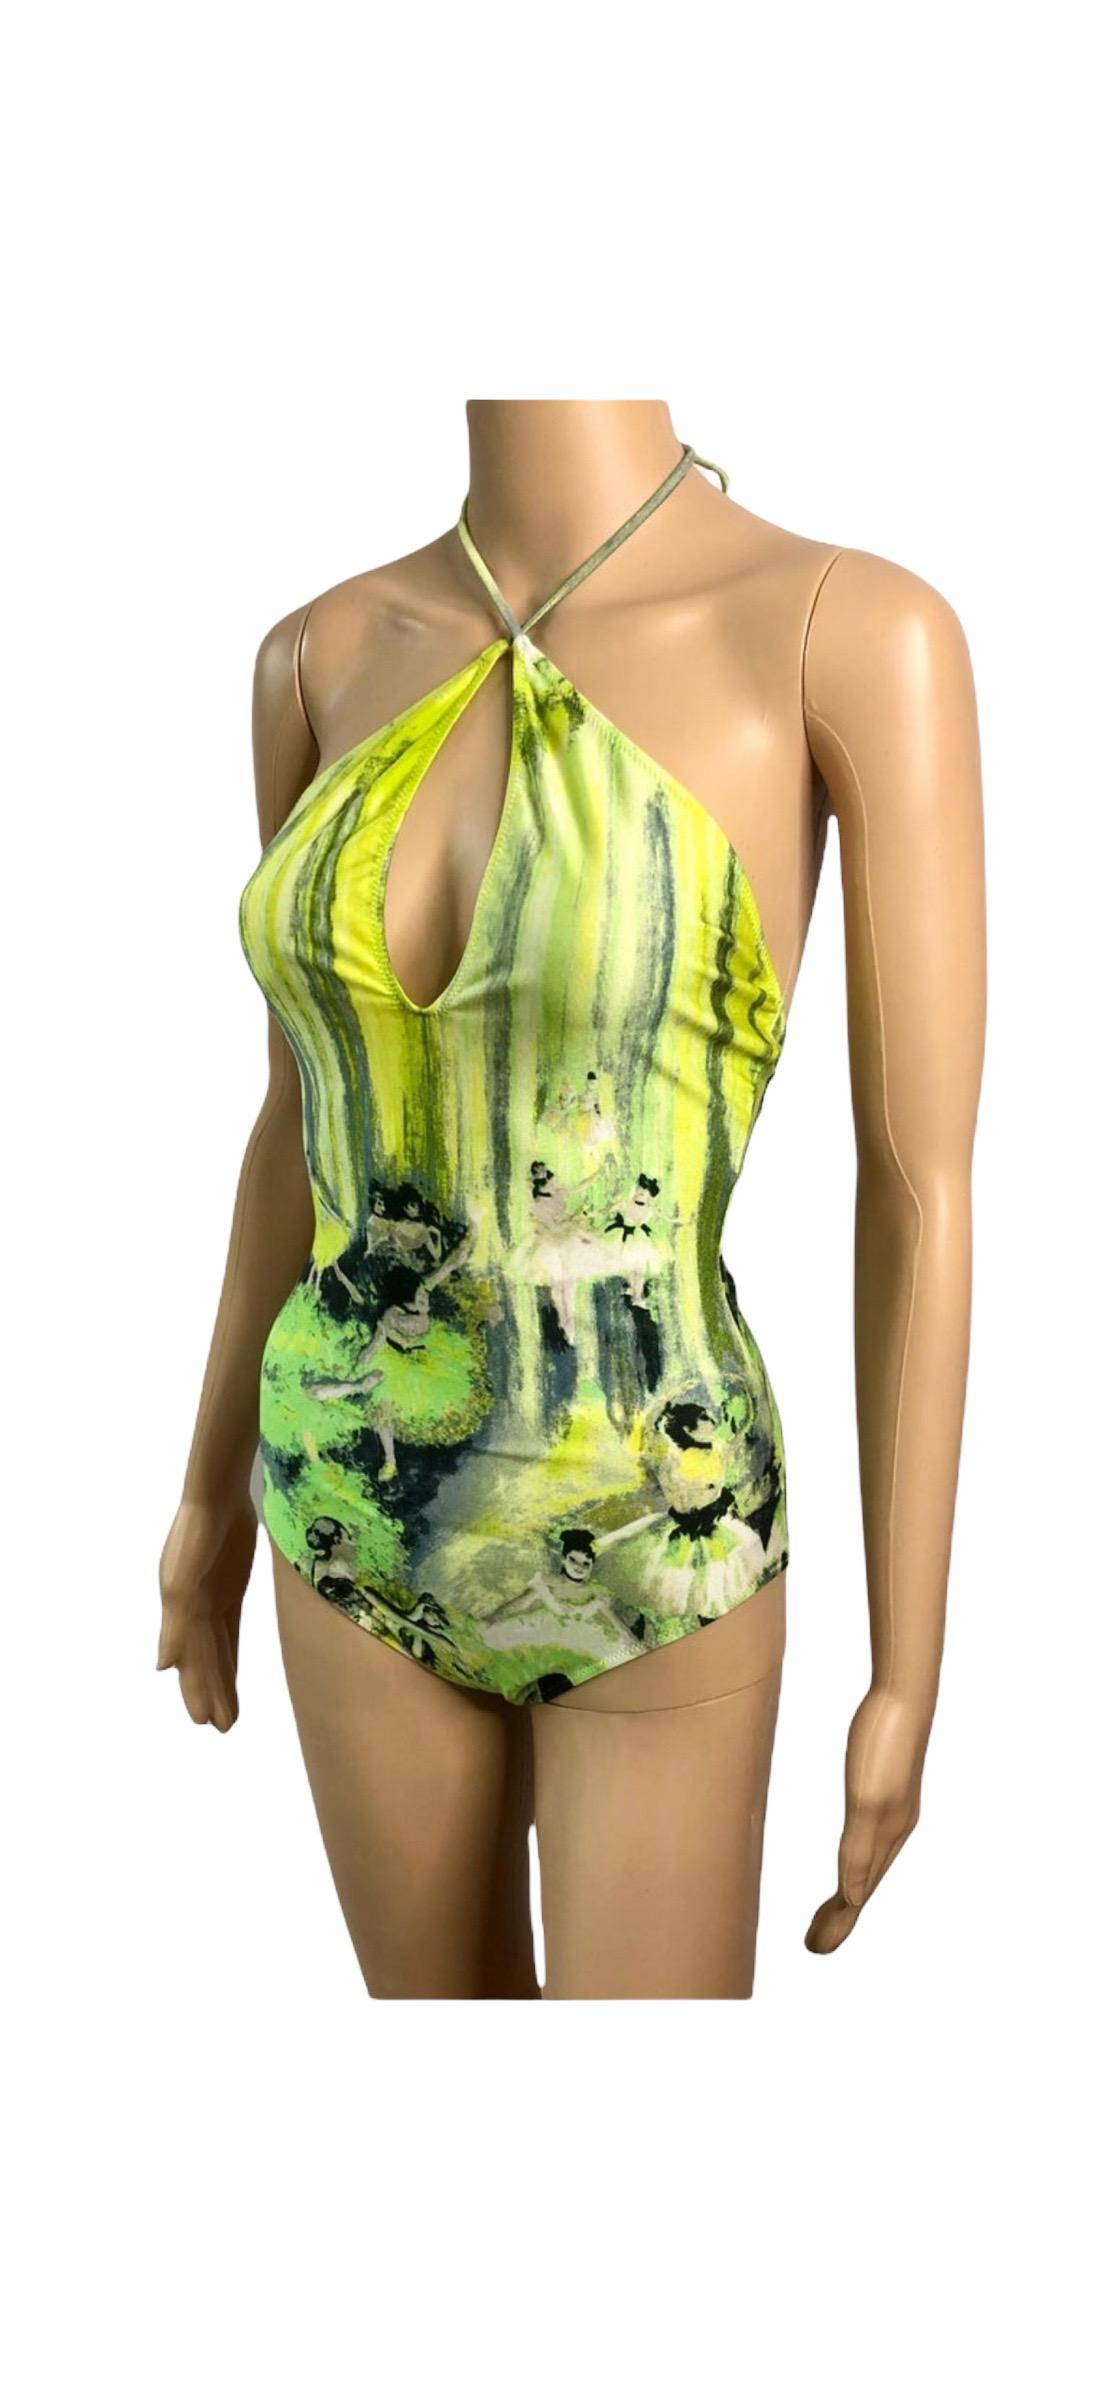 Jean Paul Gaultier Soleil S/S 2004 Degas Ballet Bodysuit Swimwear Swimsuit For Sale 2